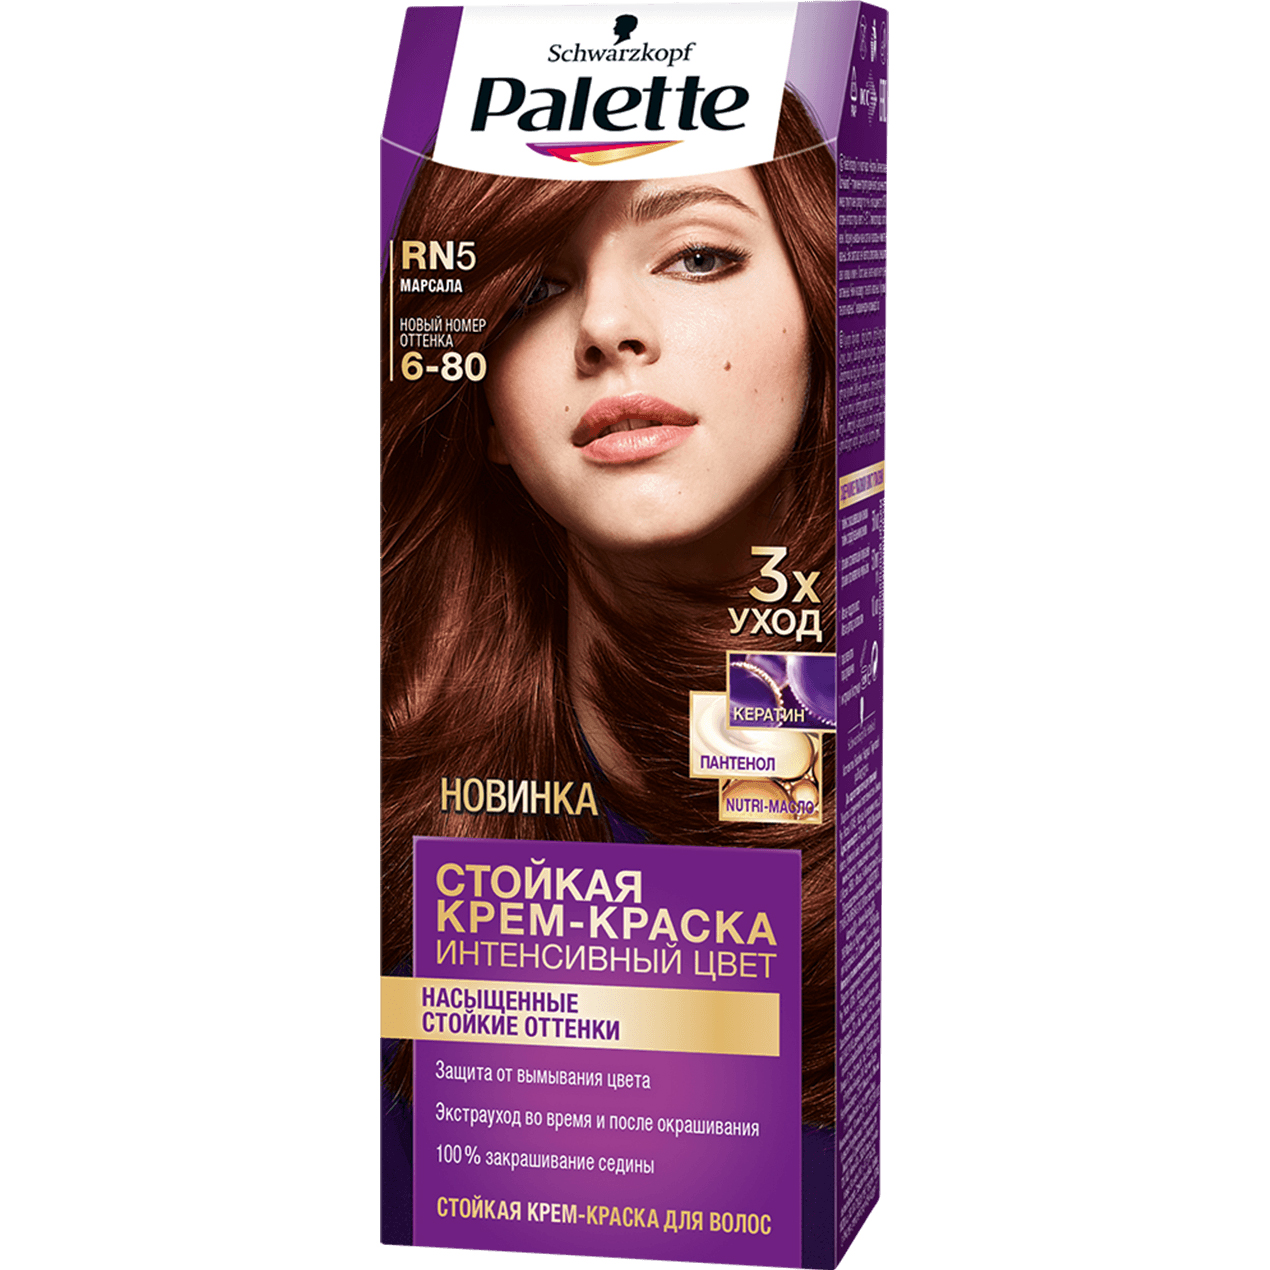 Крем-краска для волос Palette Интенсивный цвет 6-80, RN5 Марсала 110 мл крем интенсивный увлажняющий nivea soft 100мл 89059